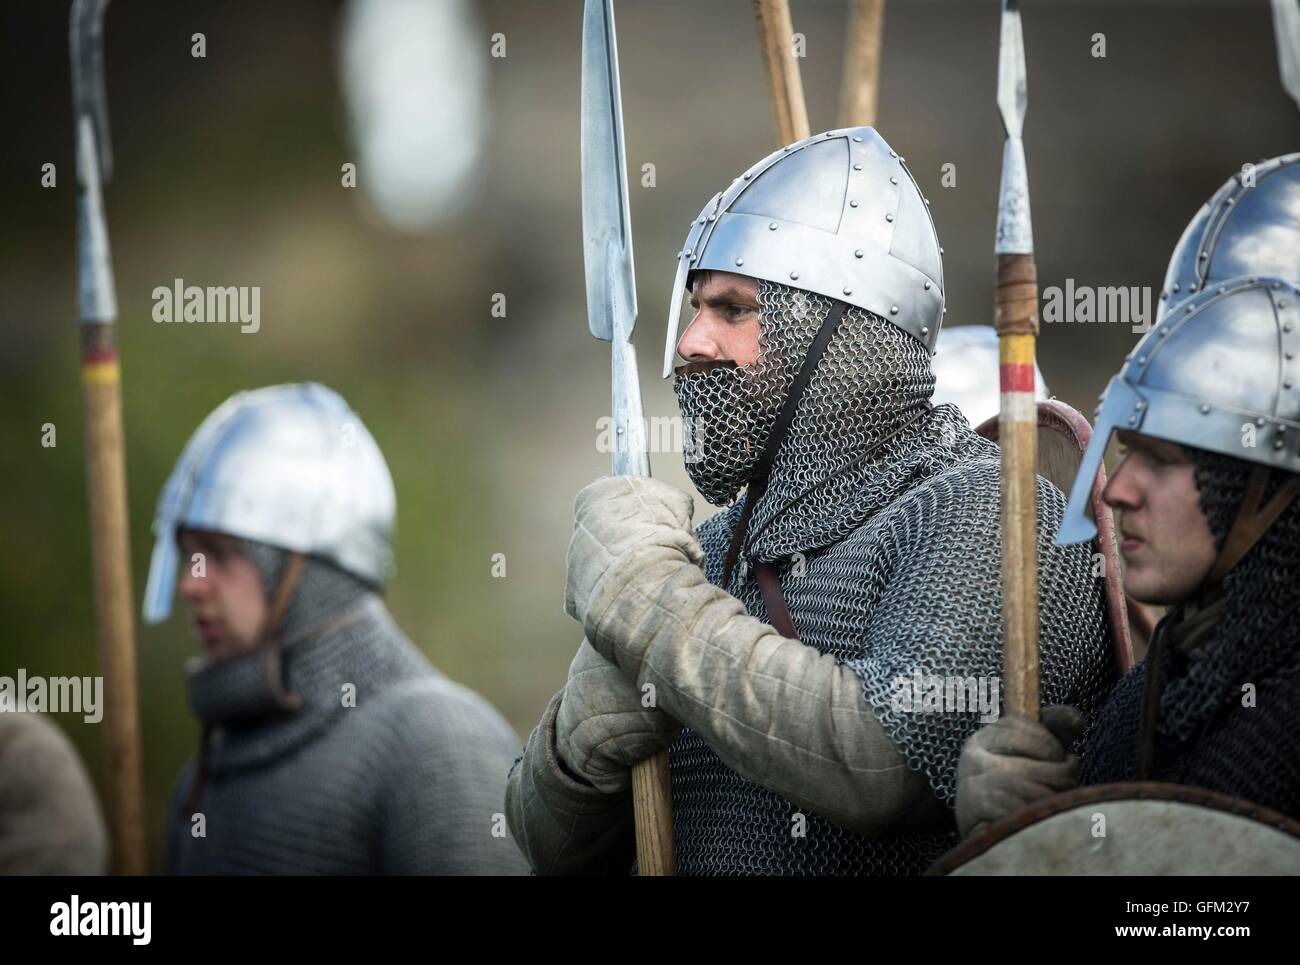 Norman e guerrieri sassoni prendere parte in una simulazione di battaglia per contrassegnare il 950th anniversario della conquista normanna, durante una giornata di eventi presso il castello di Richmond in North Yorkshire. Foto Stock